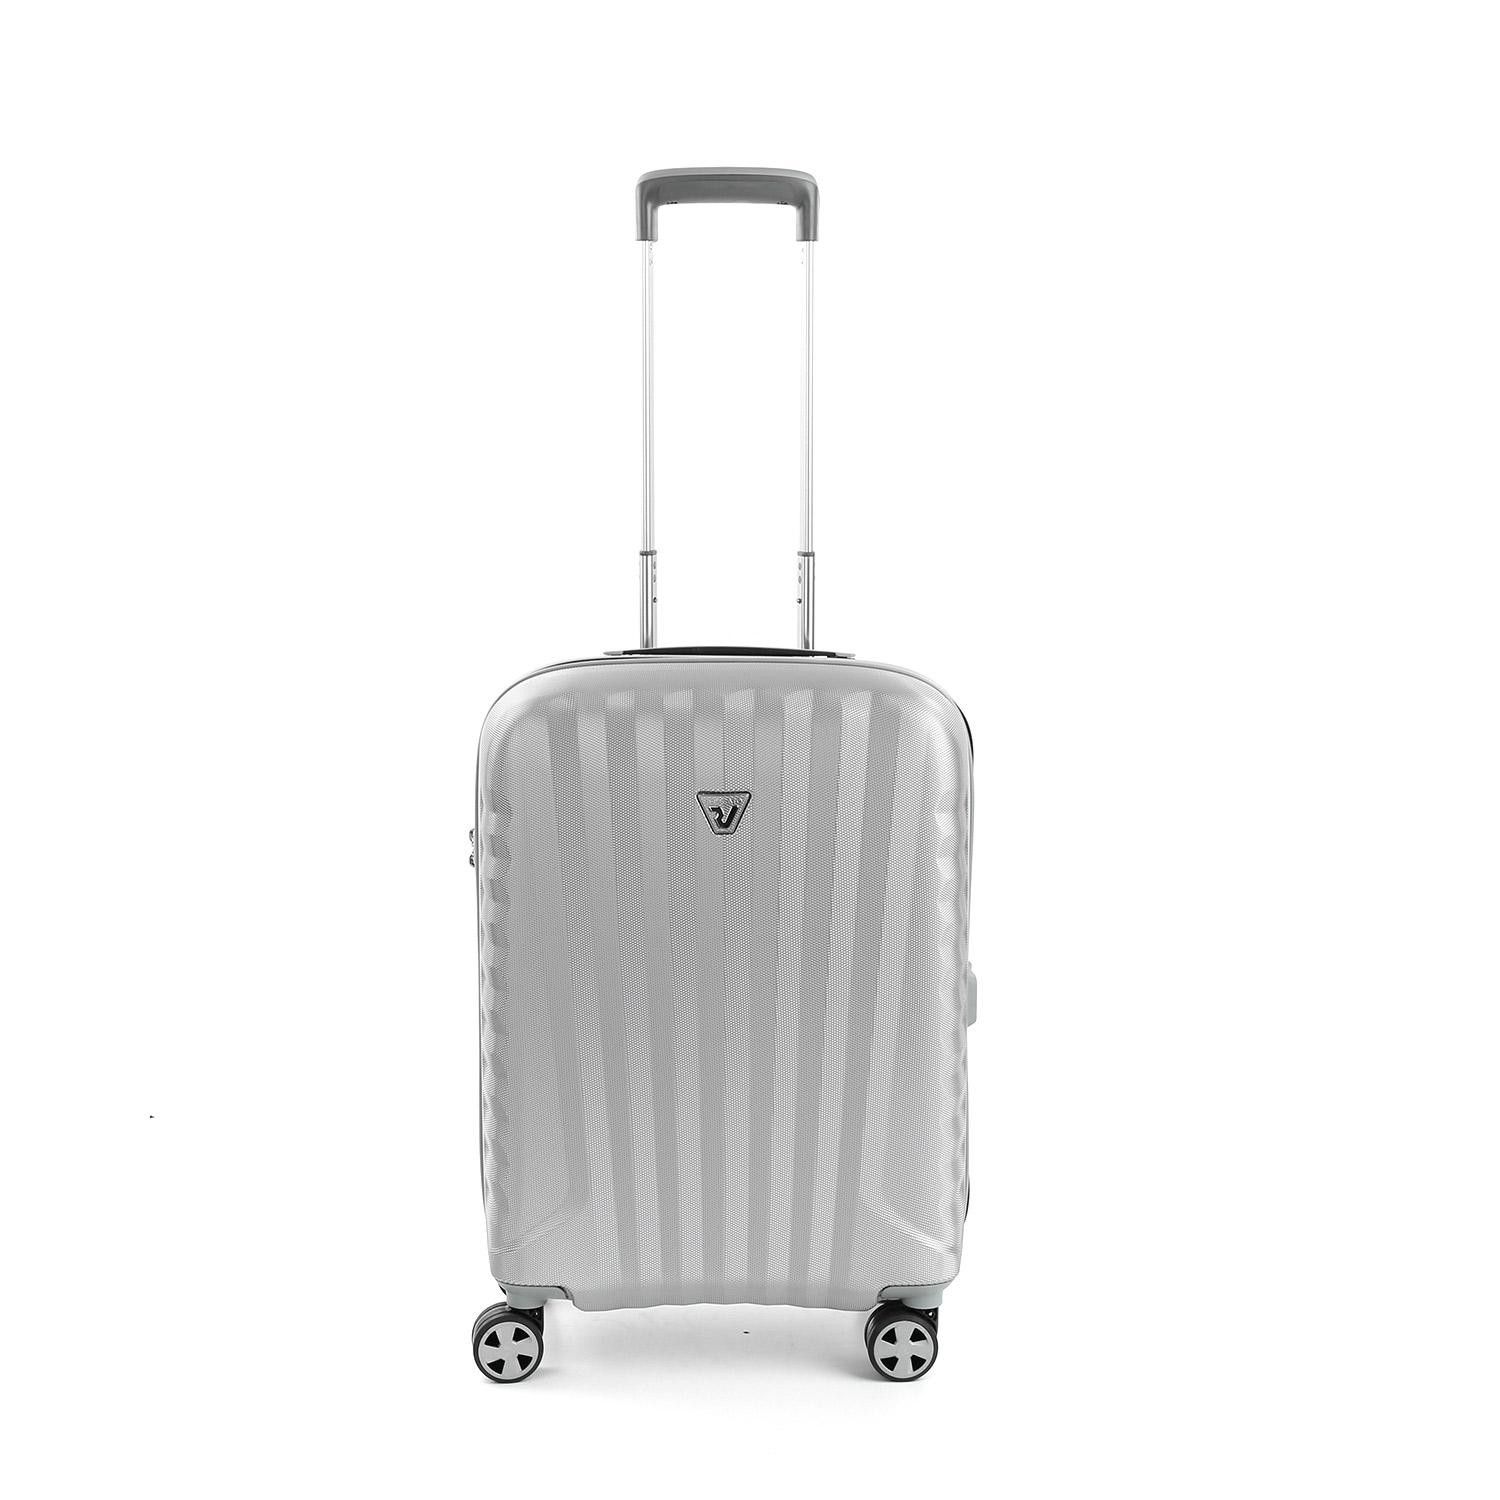 Маленька валіза Roncato UNO ZSL Premium 2.0 5463/0225